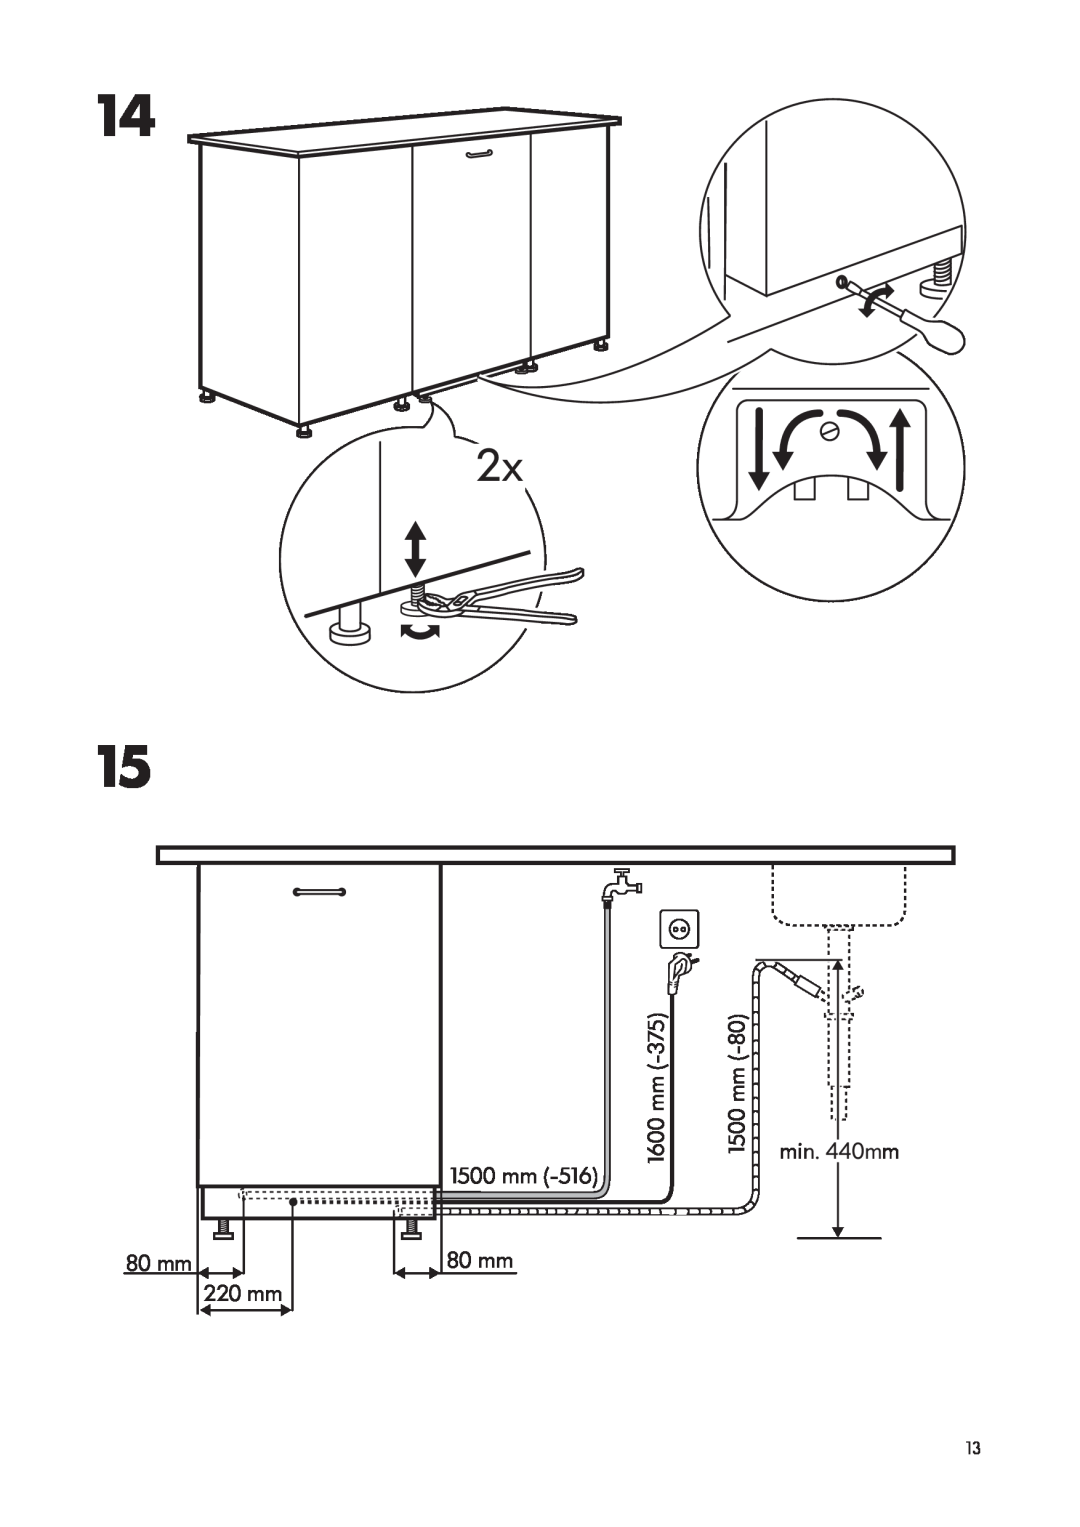 IKEA DW60 manual 80 mm 220 mm, 1500 mm, 1600 mm, min. 440mm 